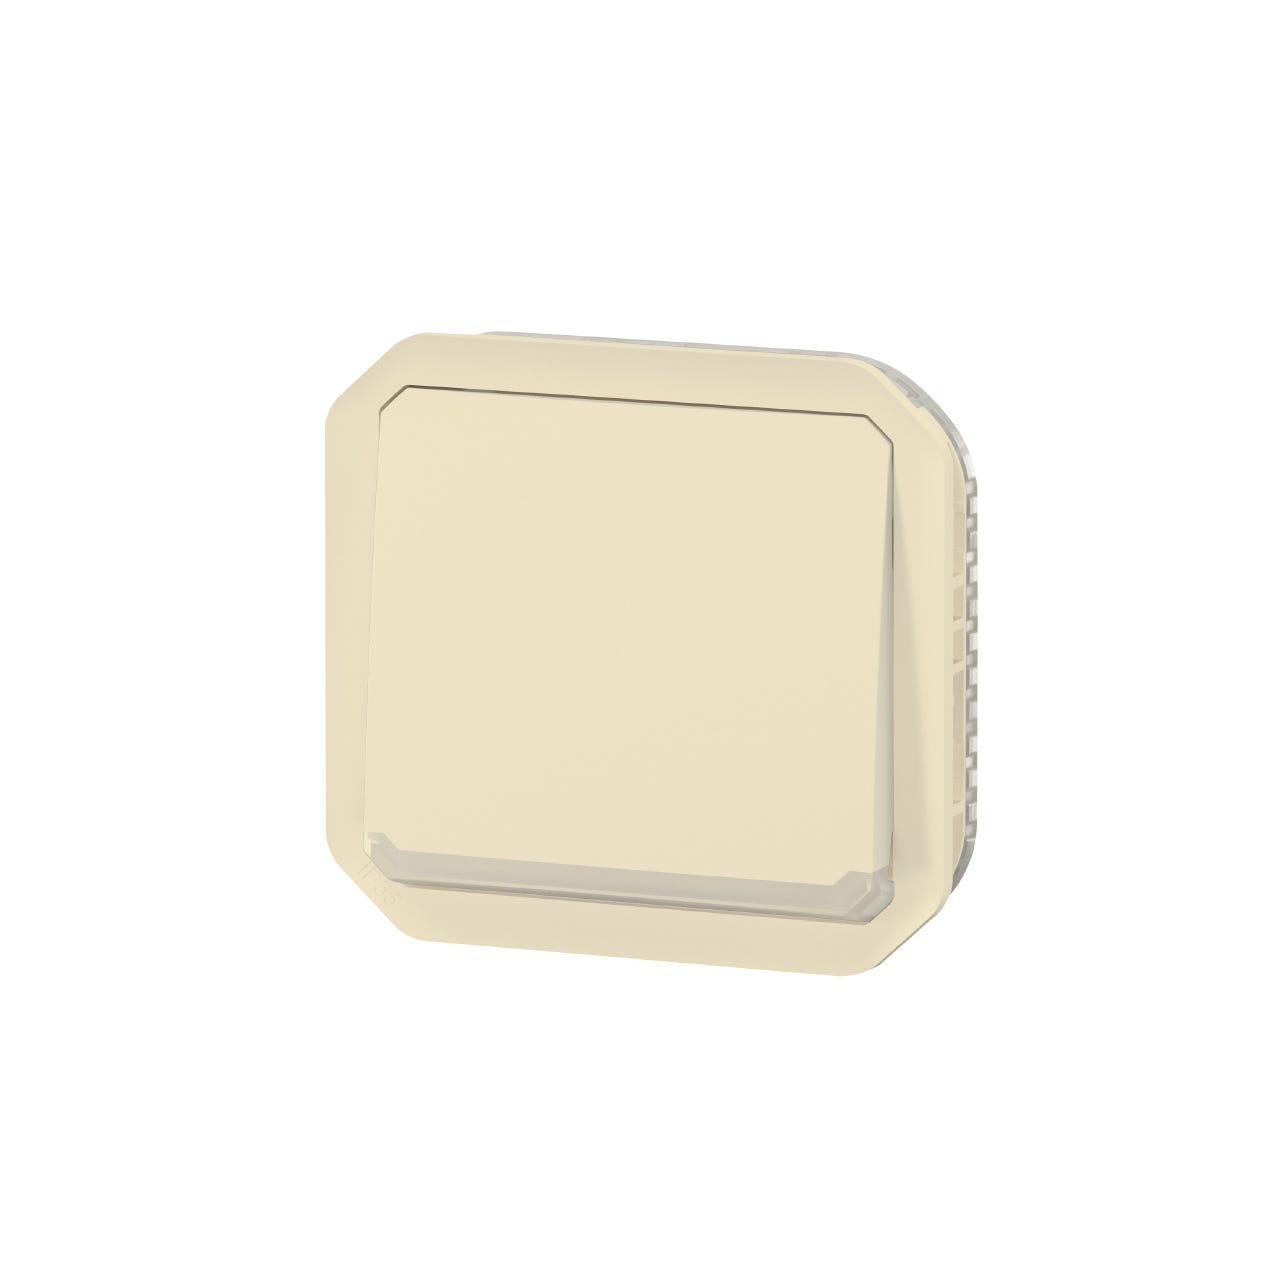 bouton poussoir inverseur - no/nc - lumineux - beige - composable - legrand plexo 069826l 0